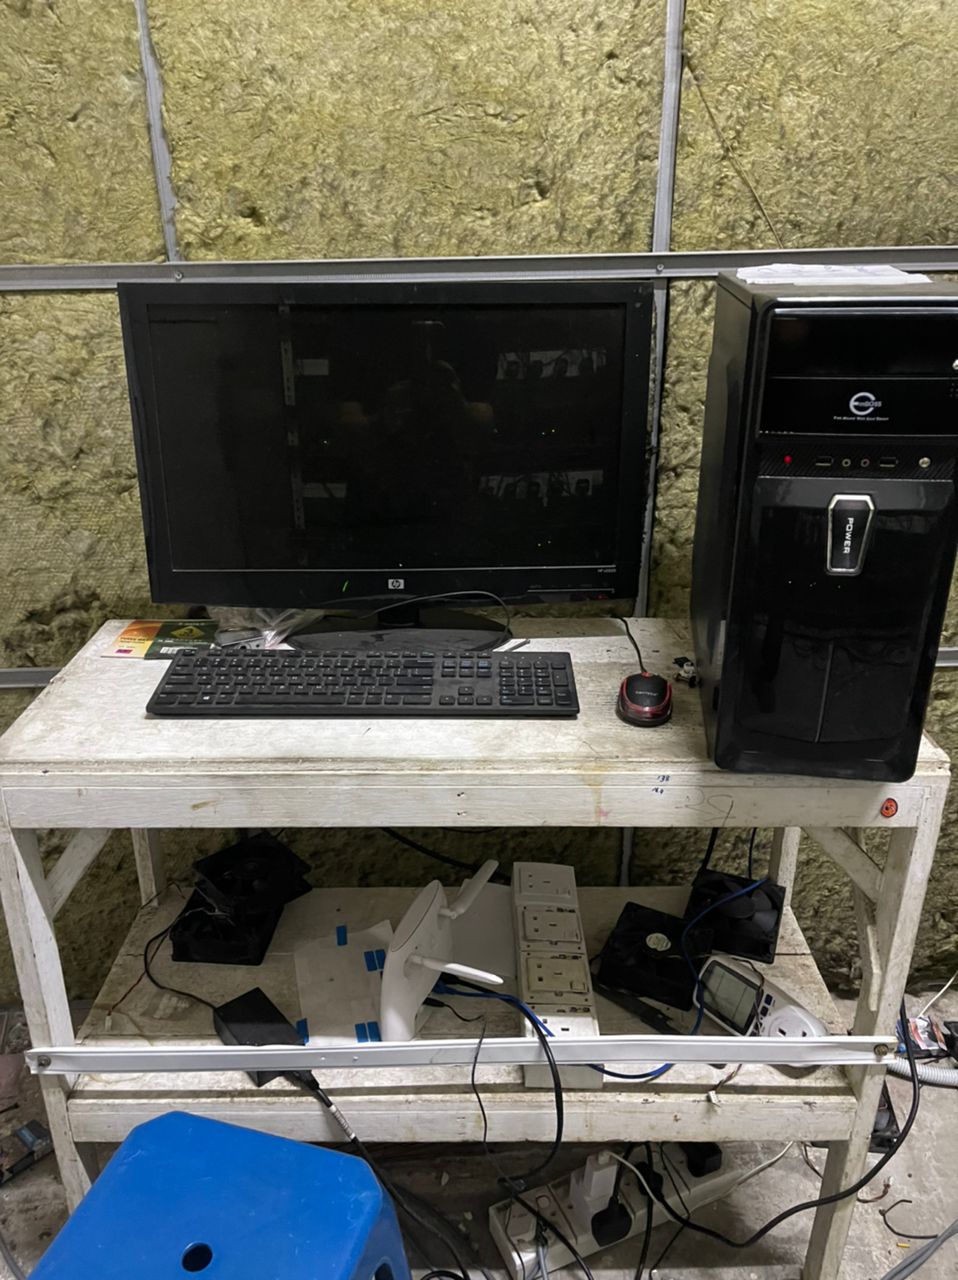 警方在第二取缔地点充公1套桌台电脑设备。